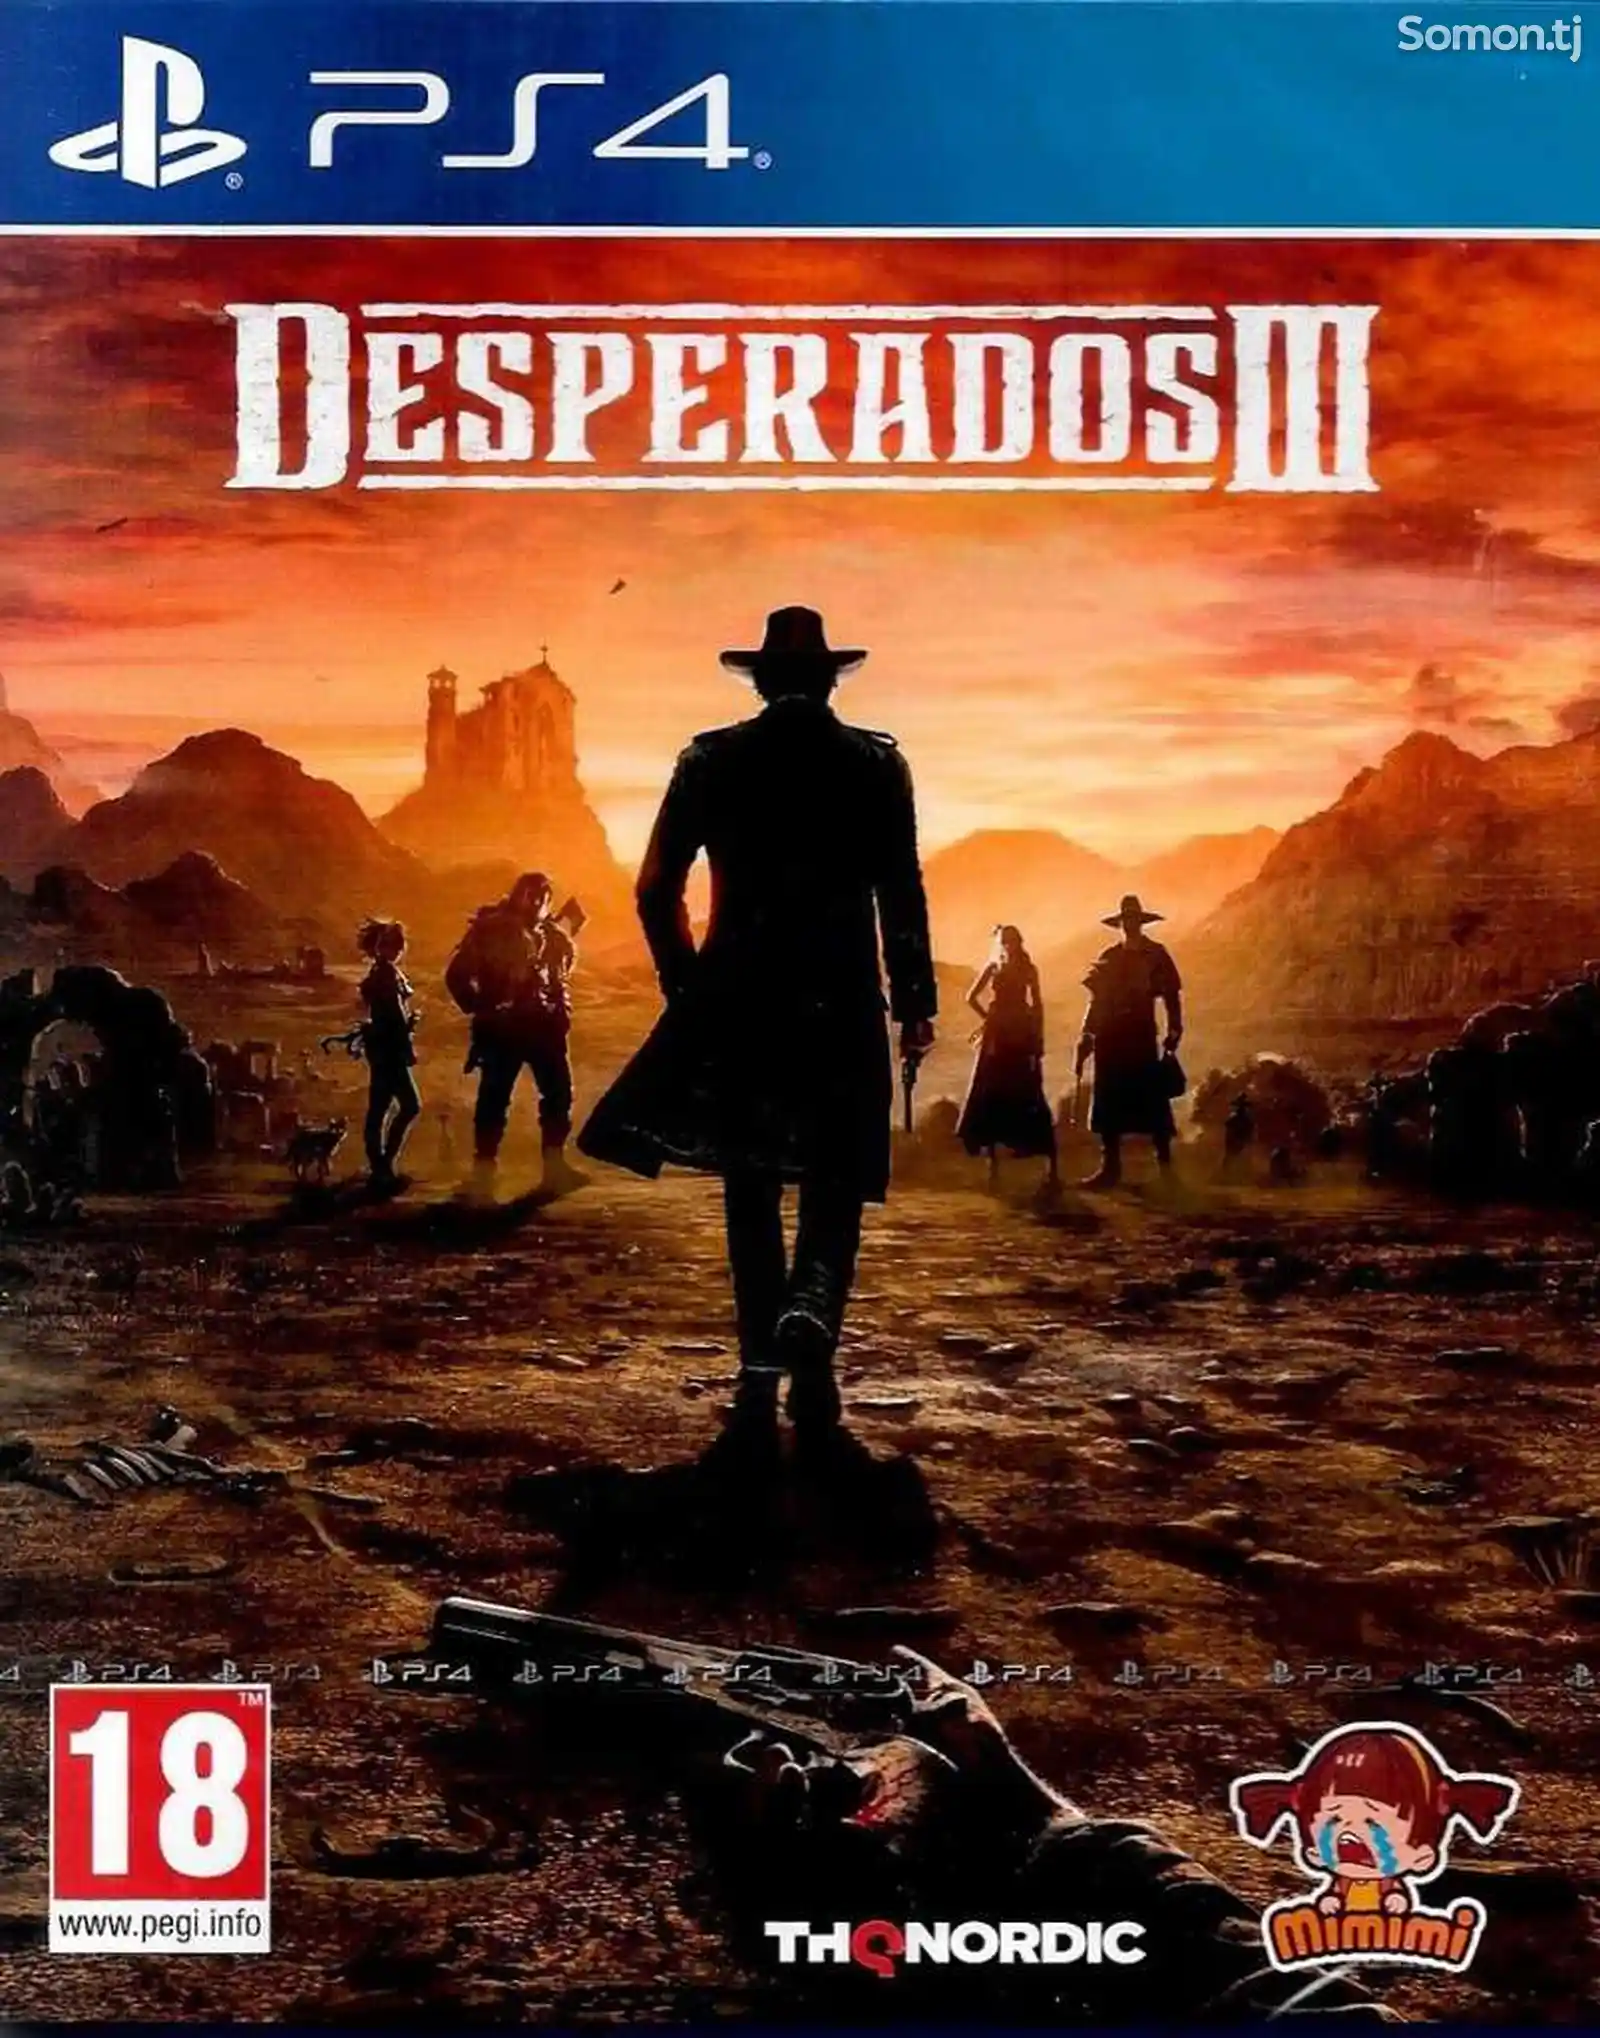 Игра Desperados для PS-4 / 5.05 / 6.72 / 7.02 / 7.55 / 9.00 /-1